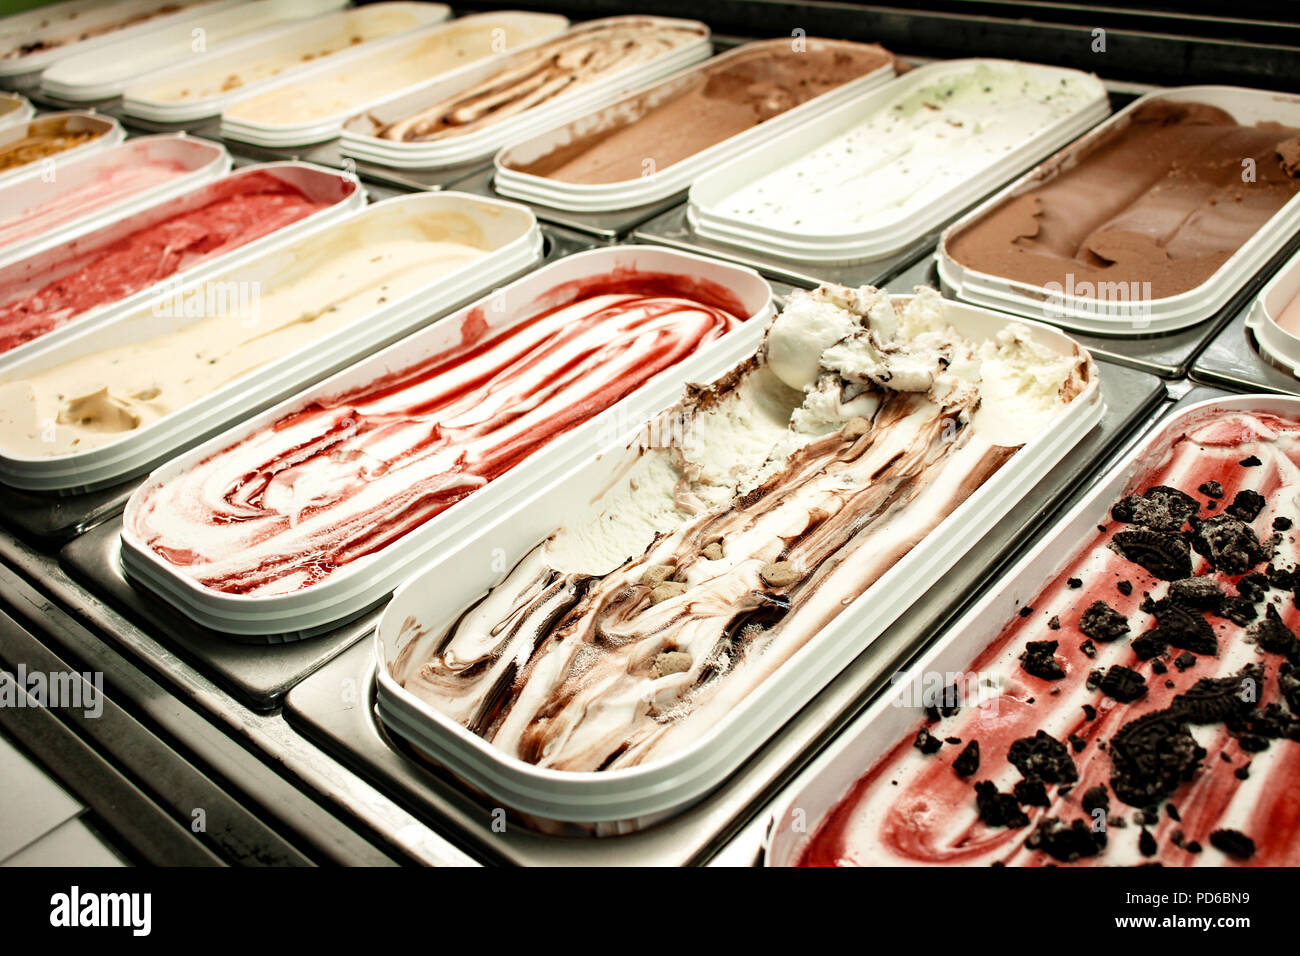 ice cream counter Stock Photo